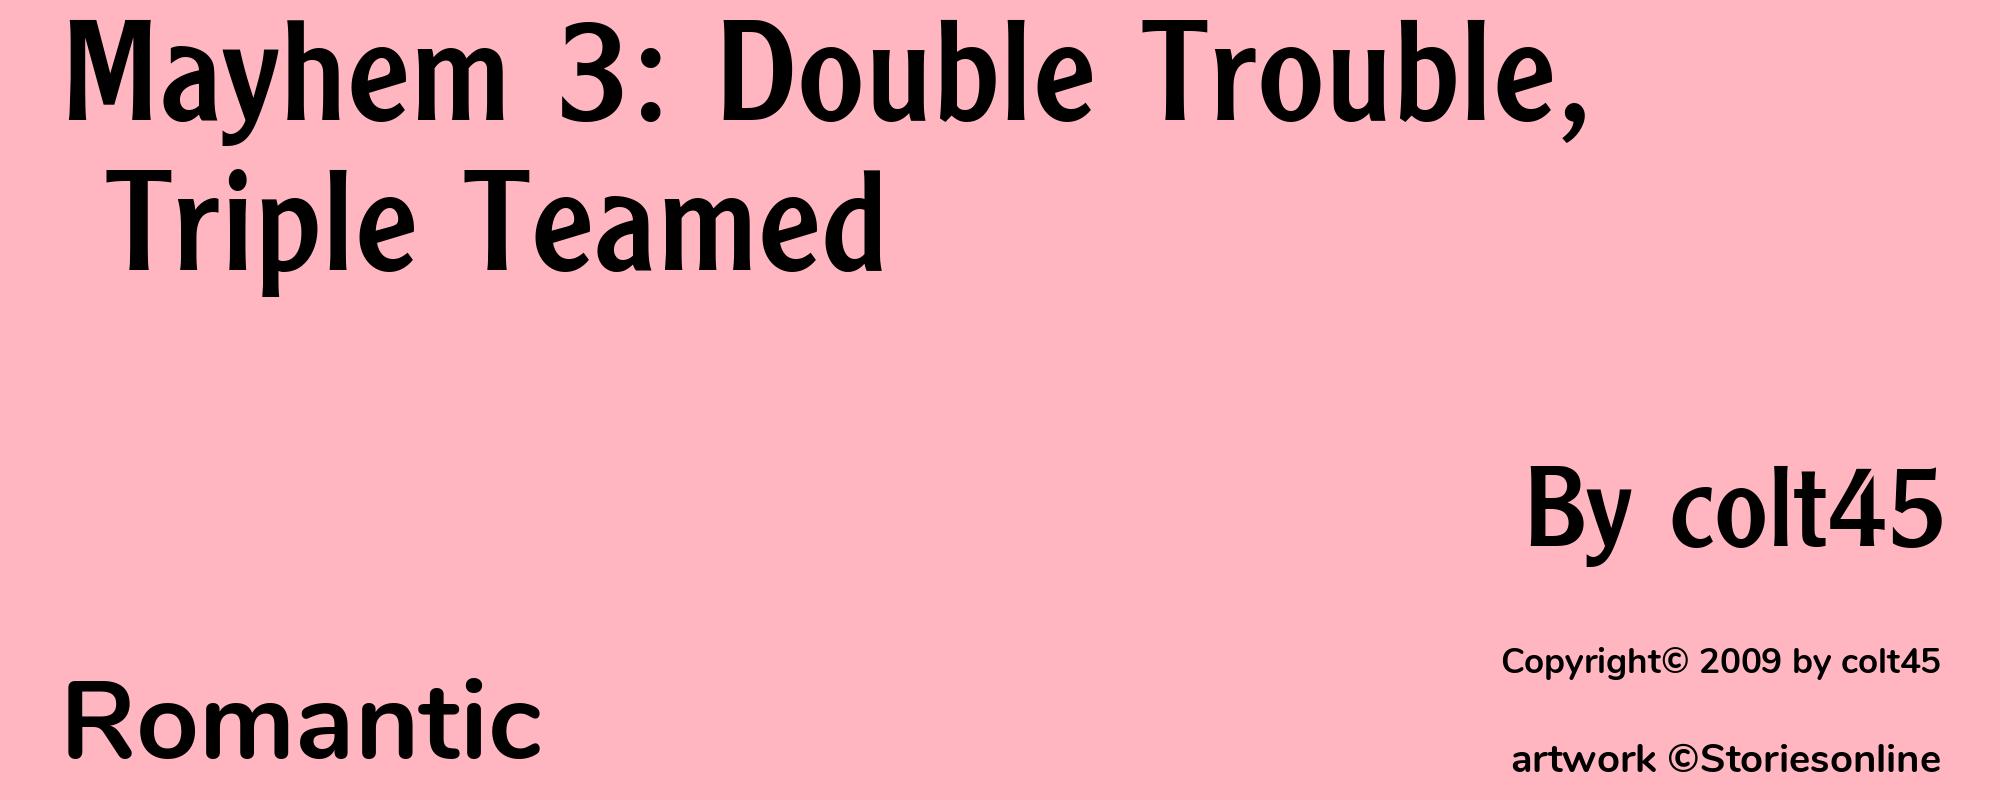 Mayhem 3: Double Trouble, Triple Teamed - Cover